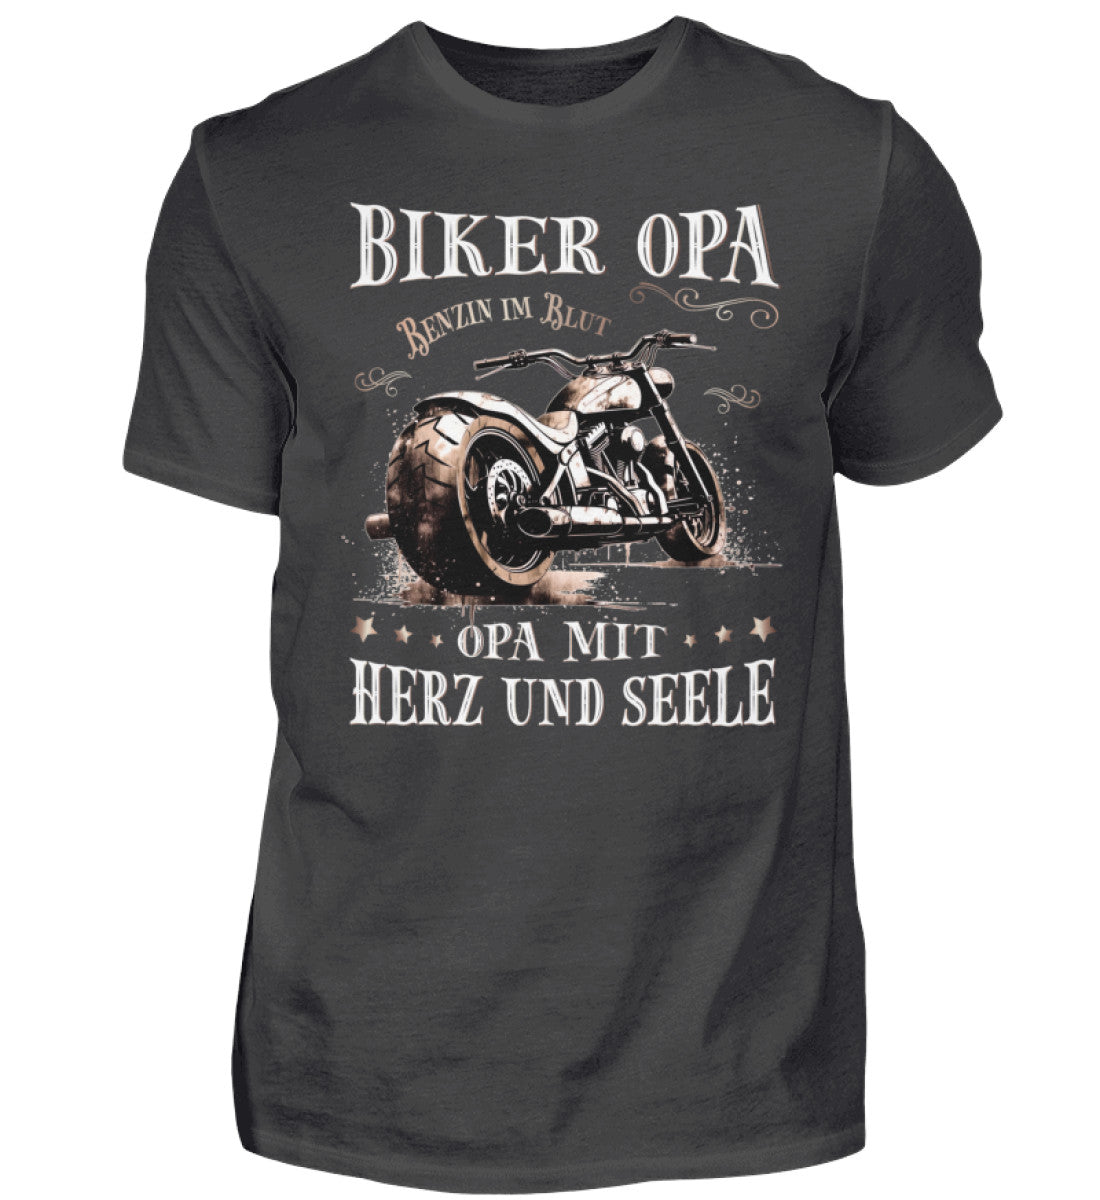 Ein Biker T-Shirt für Motorradfahrer von Wingbikers mit dem Aufdruck, Biker Opa - Benzin im Blut - Opa mit Herz und Seele, in dunkelgrau.